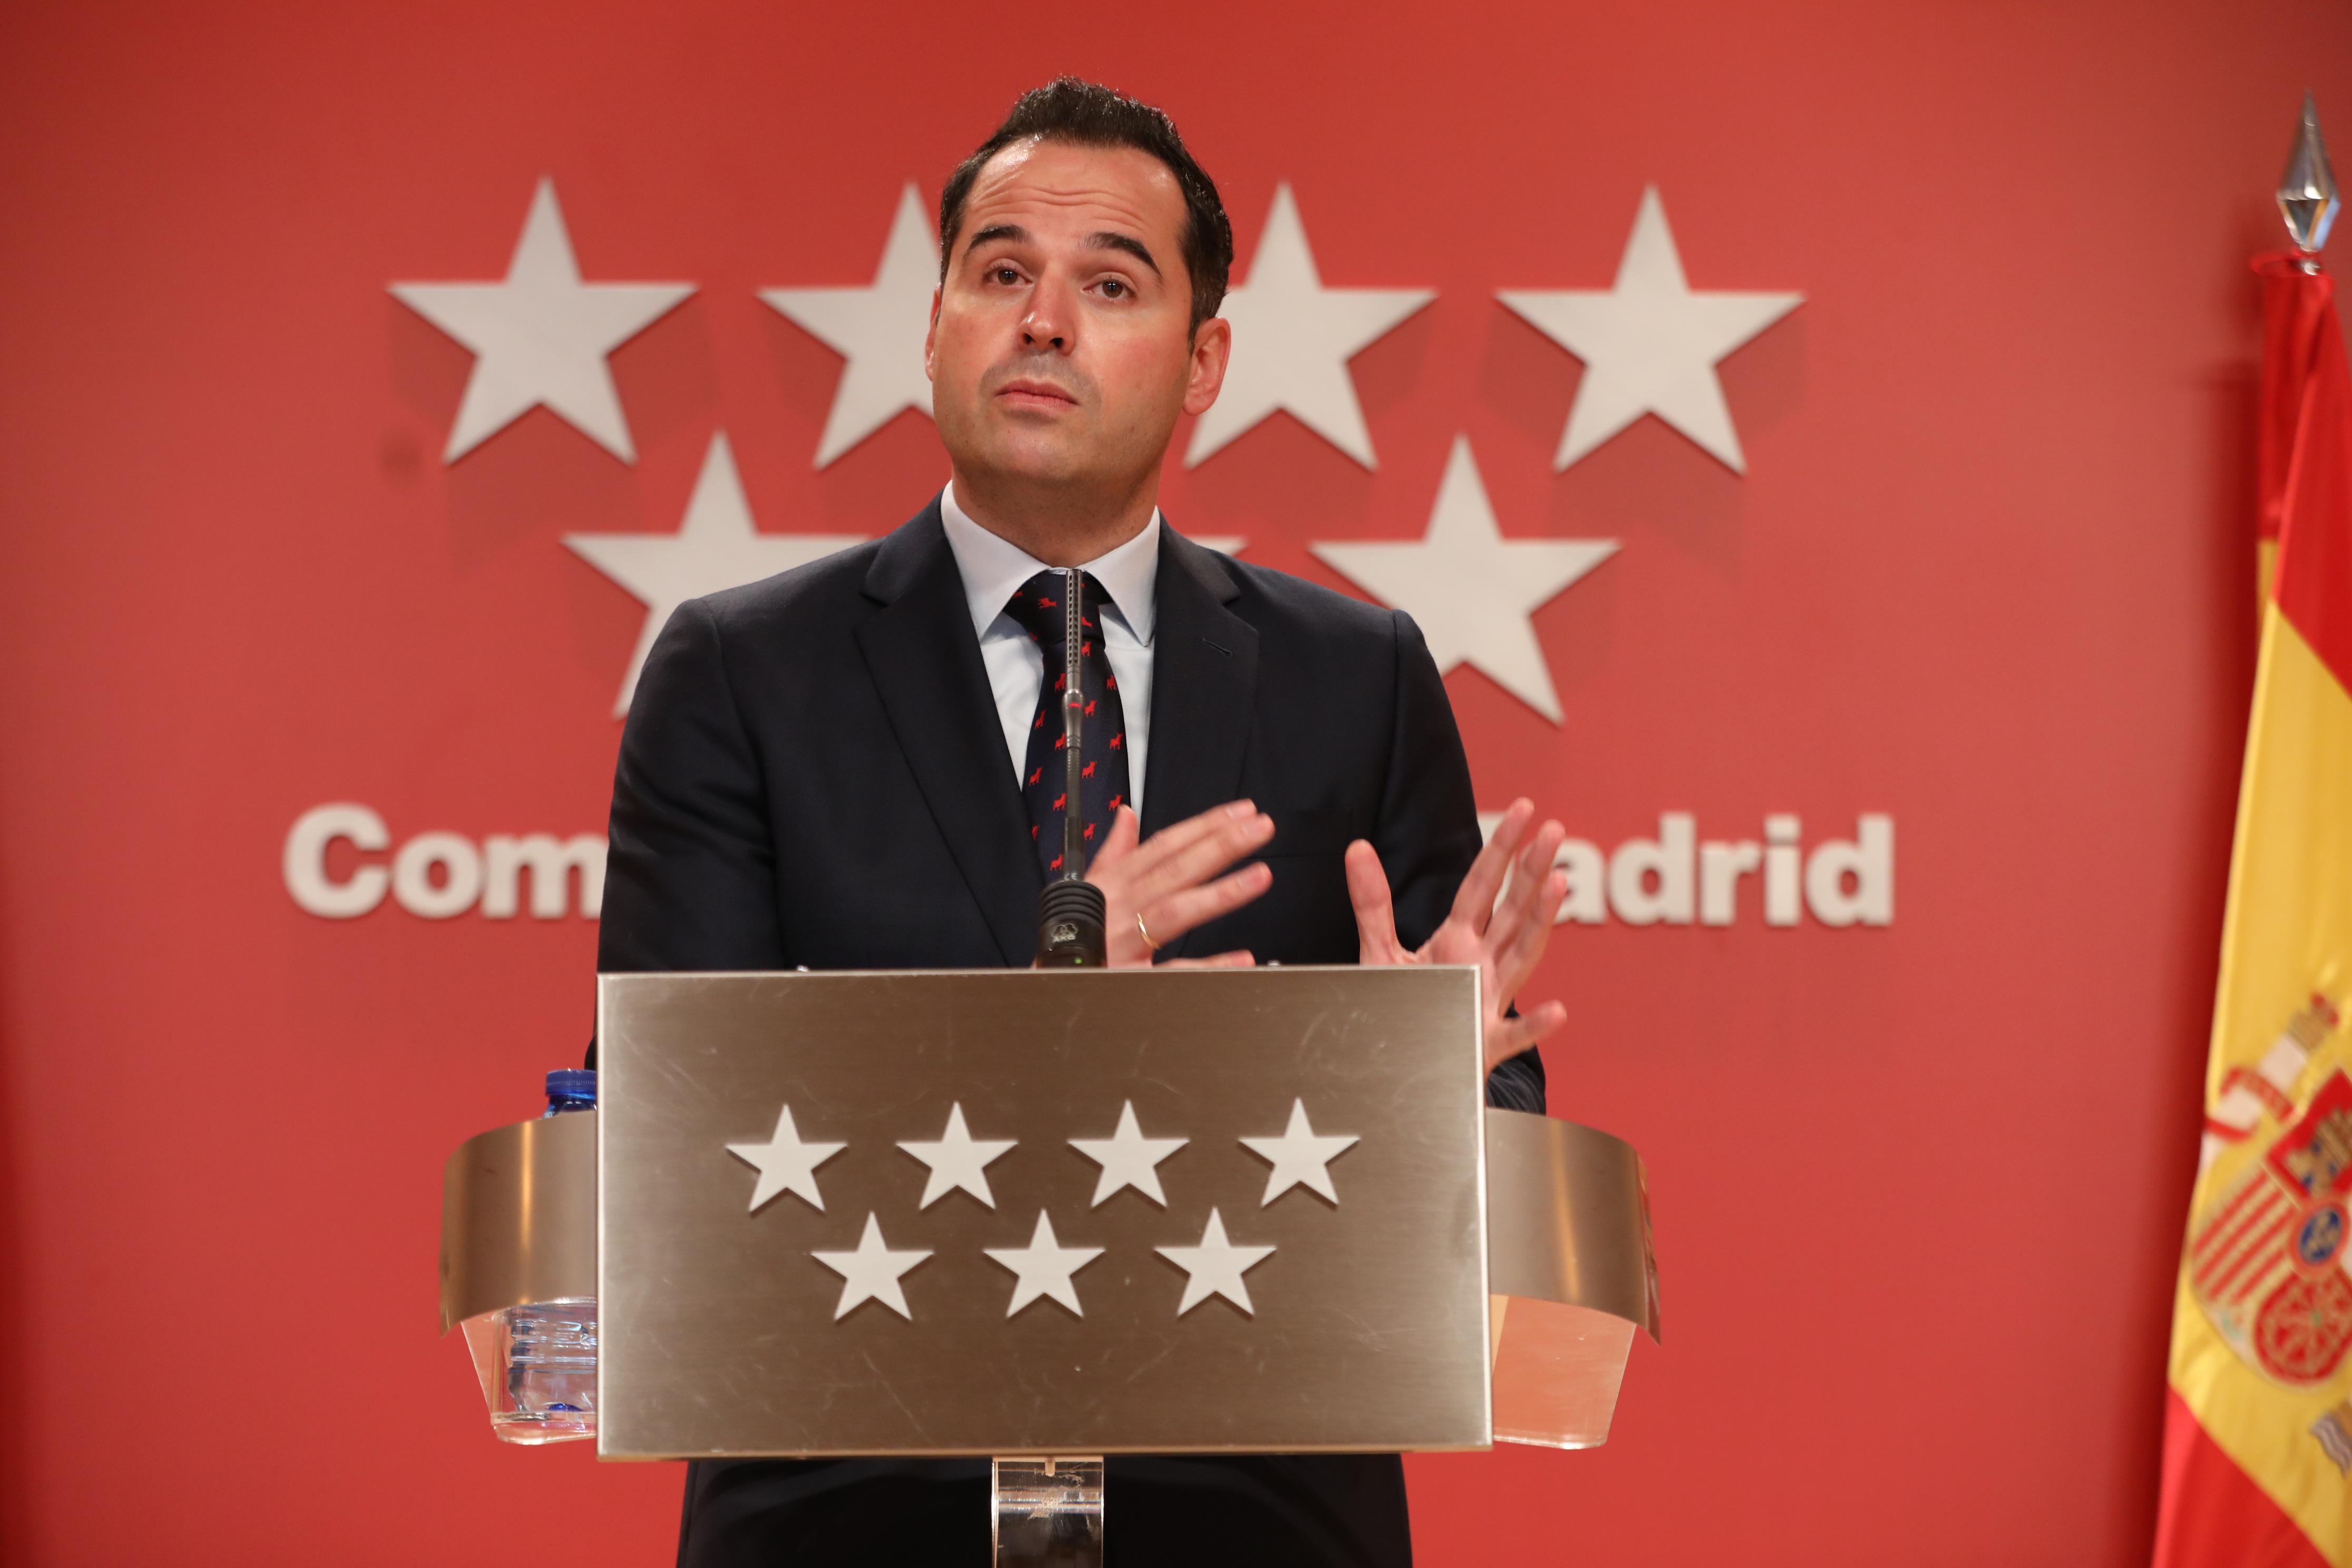 El vicepresidente, consejero de Deportes, Transparencia y portavoz de la Comunidad de Madrid, Ignacio Aguado. M.FERNÁNDEZ. POOL / Europa Press.